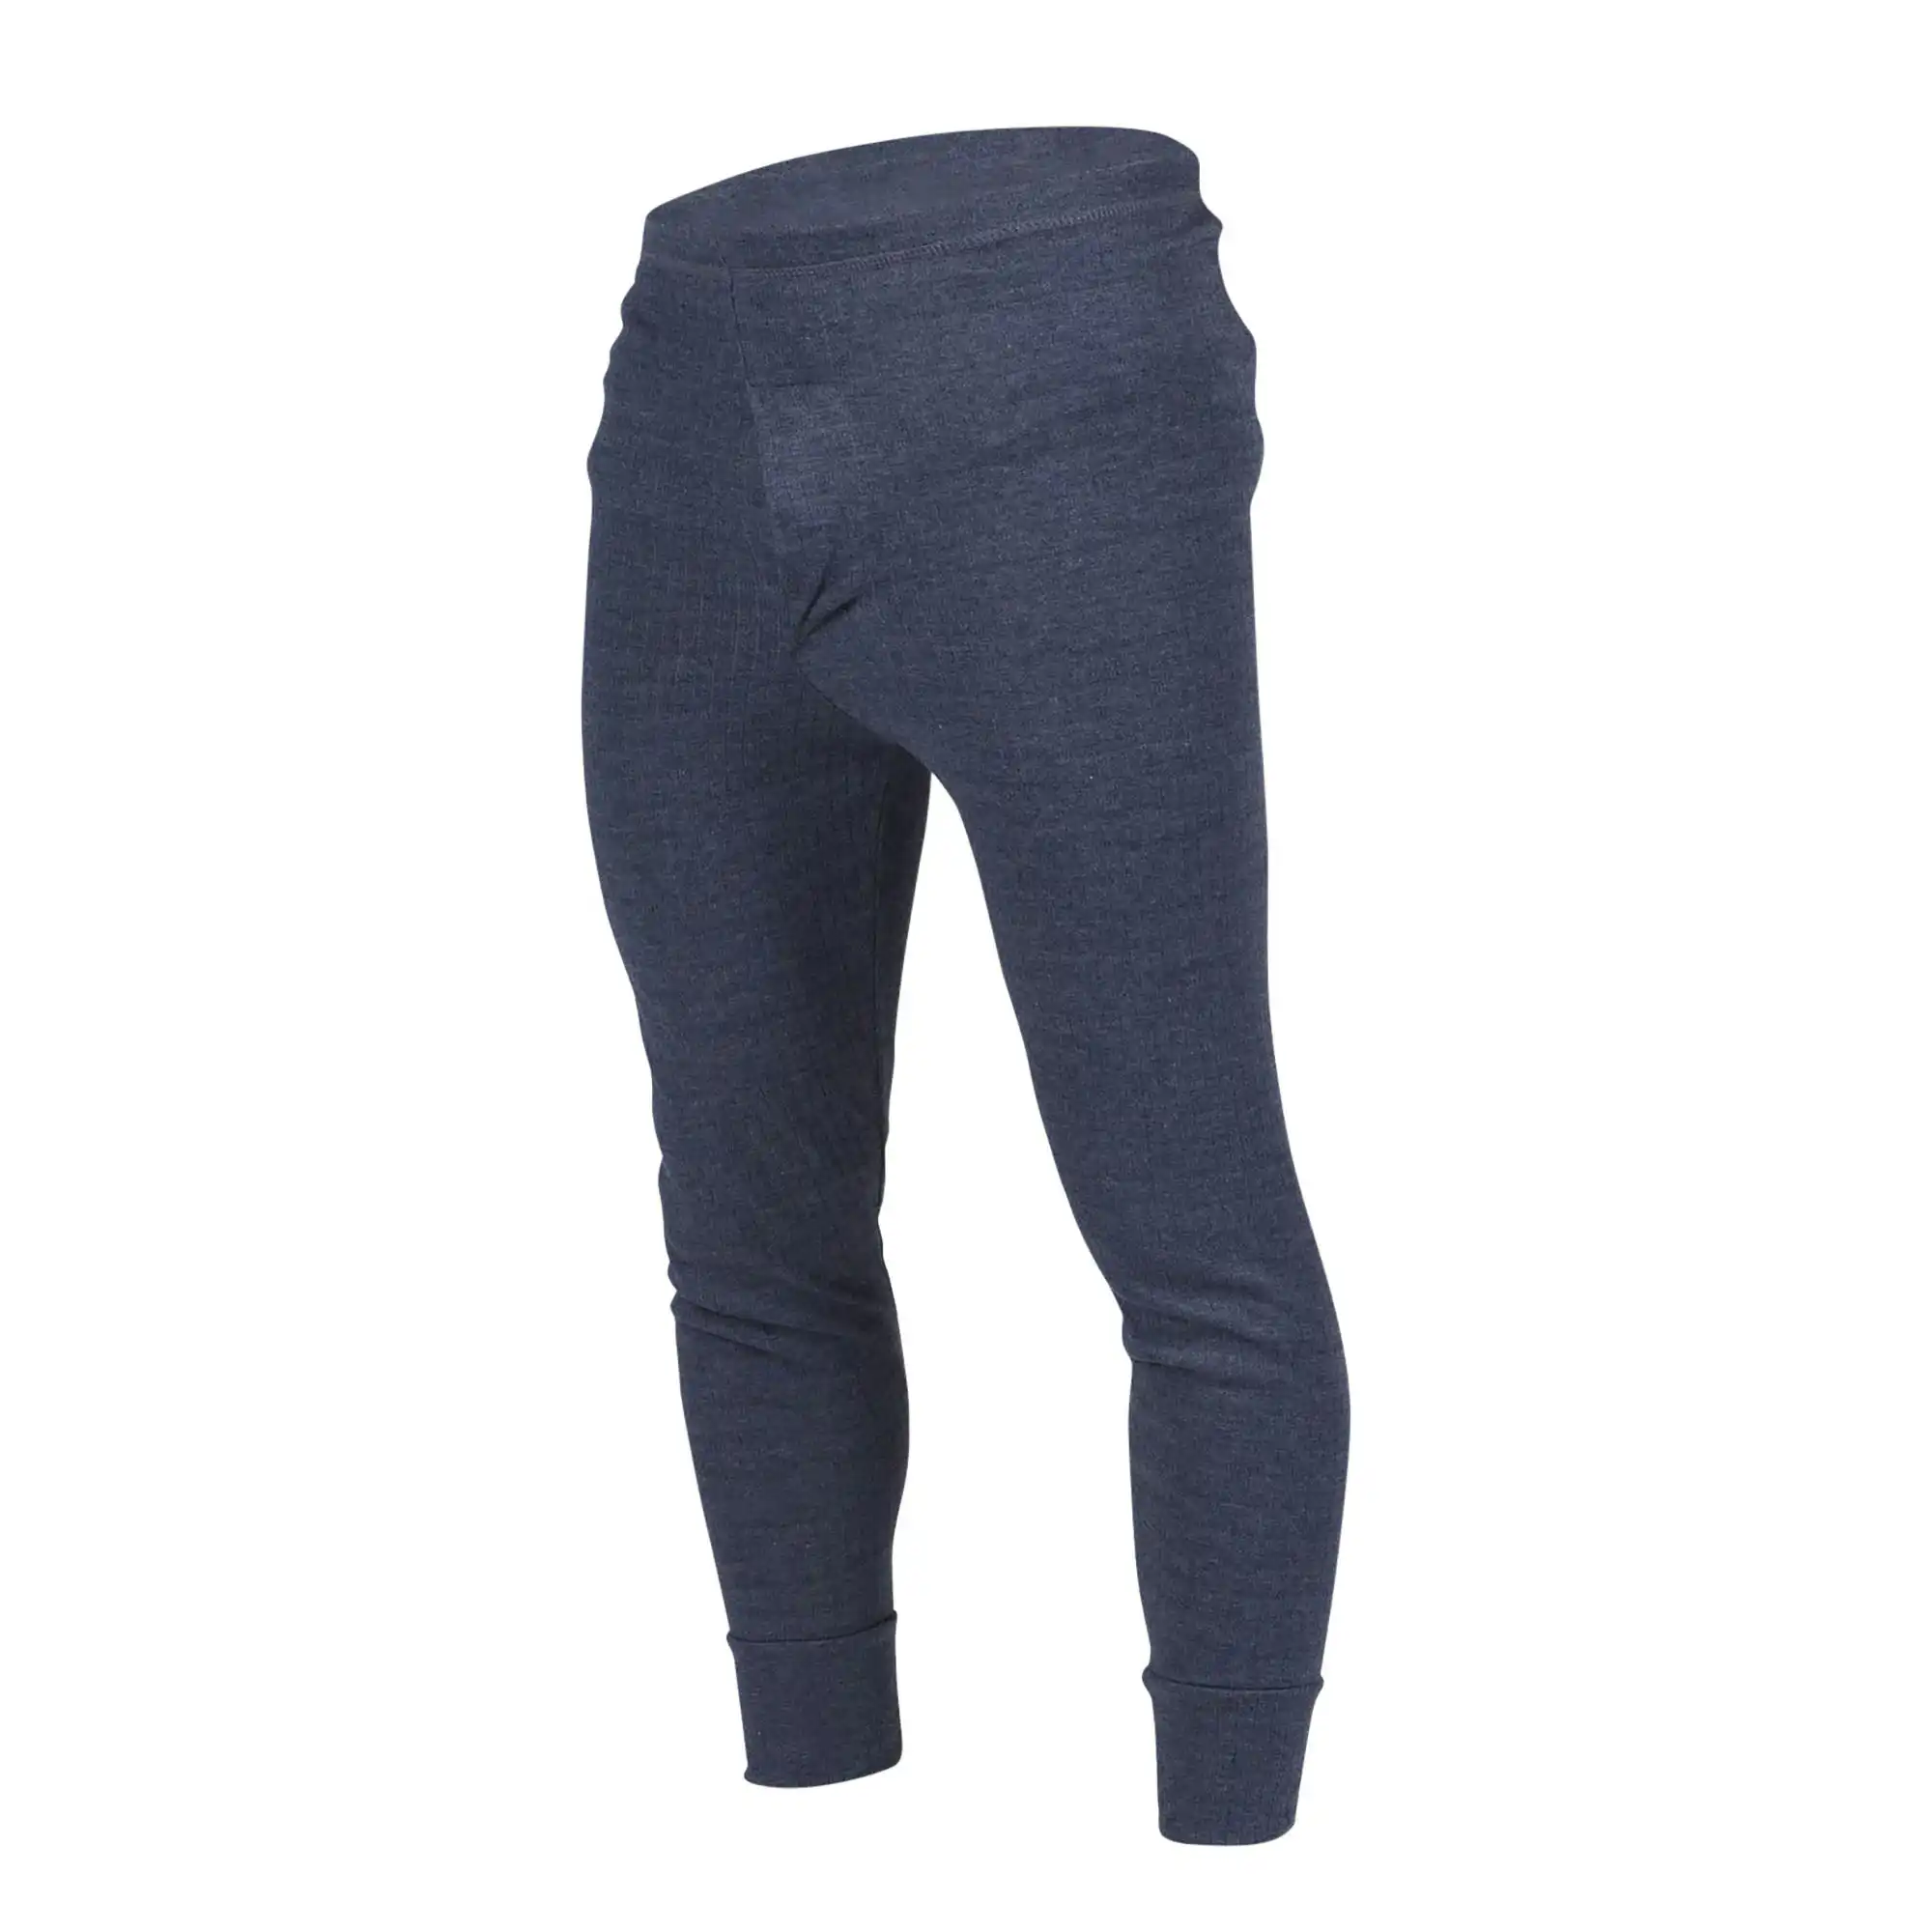 Floso Mens Thermal Underwear Long Johns/Pants (Standard Range)